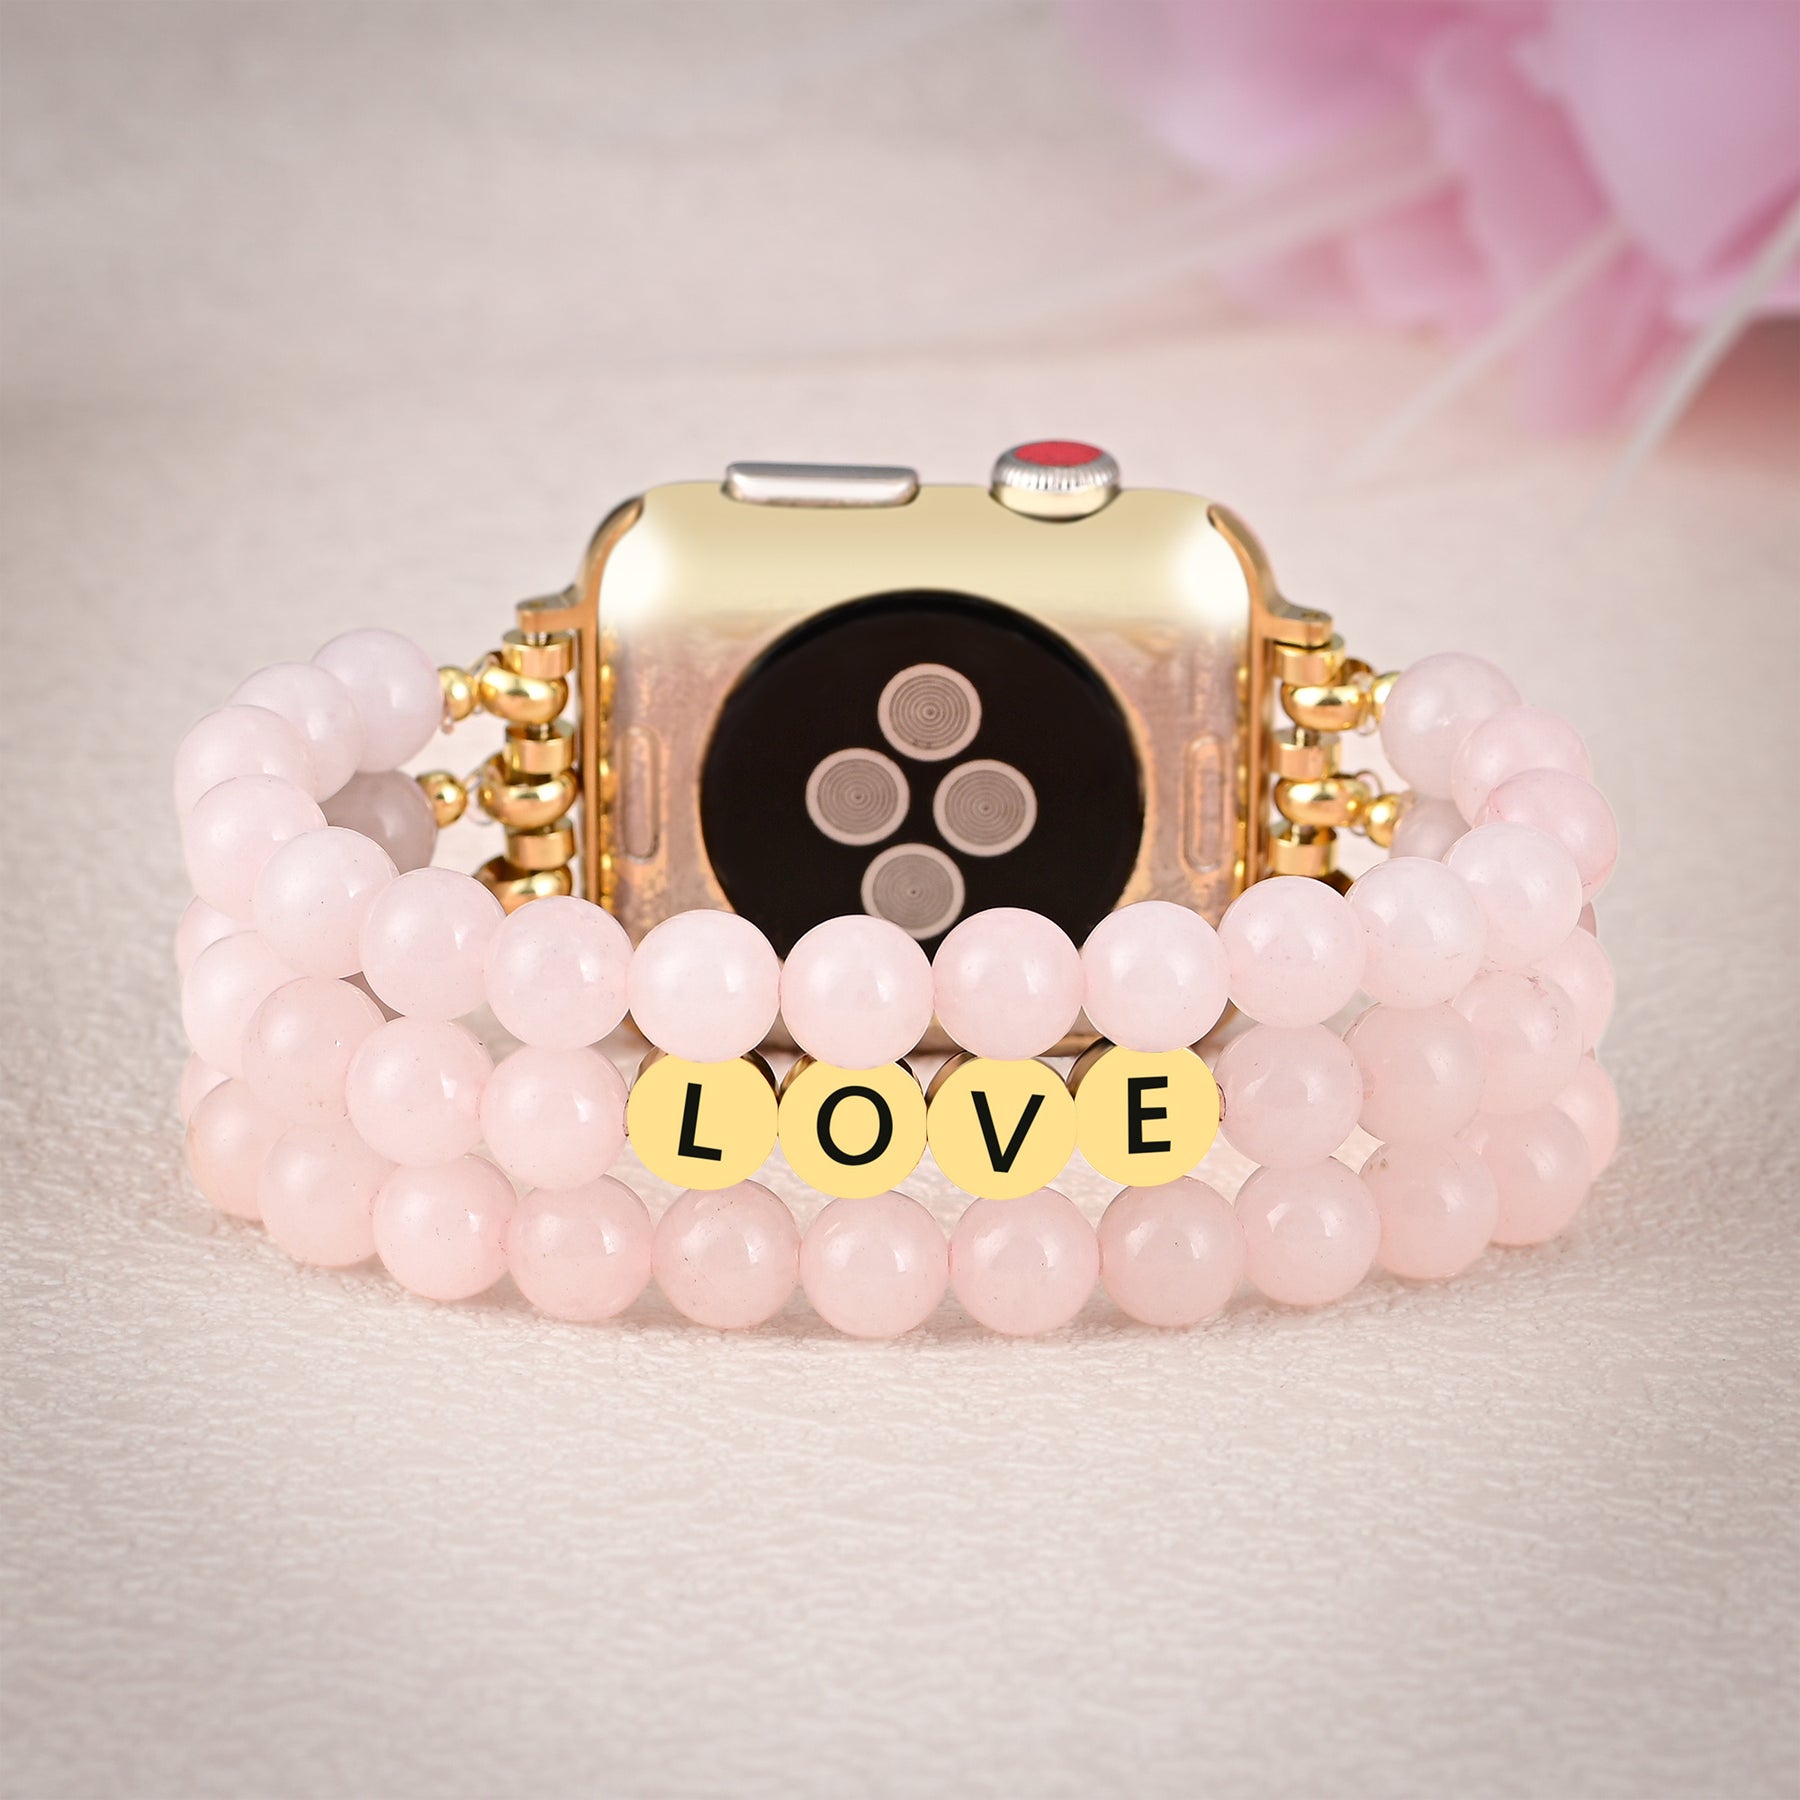 Pulseira para Apple Watch com inspiração amorosa em quartzo rosa